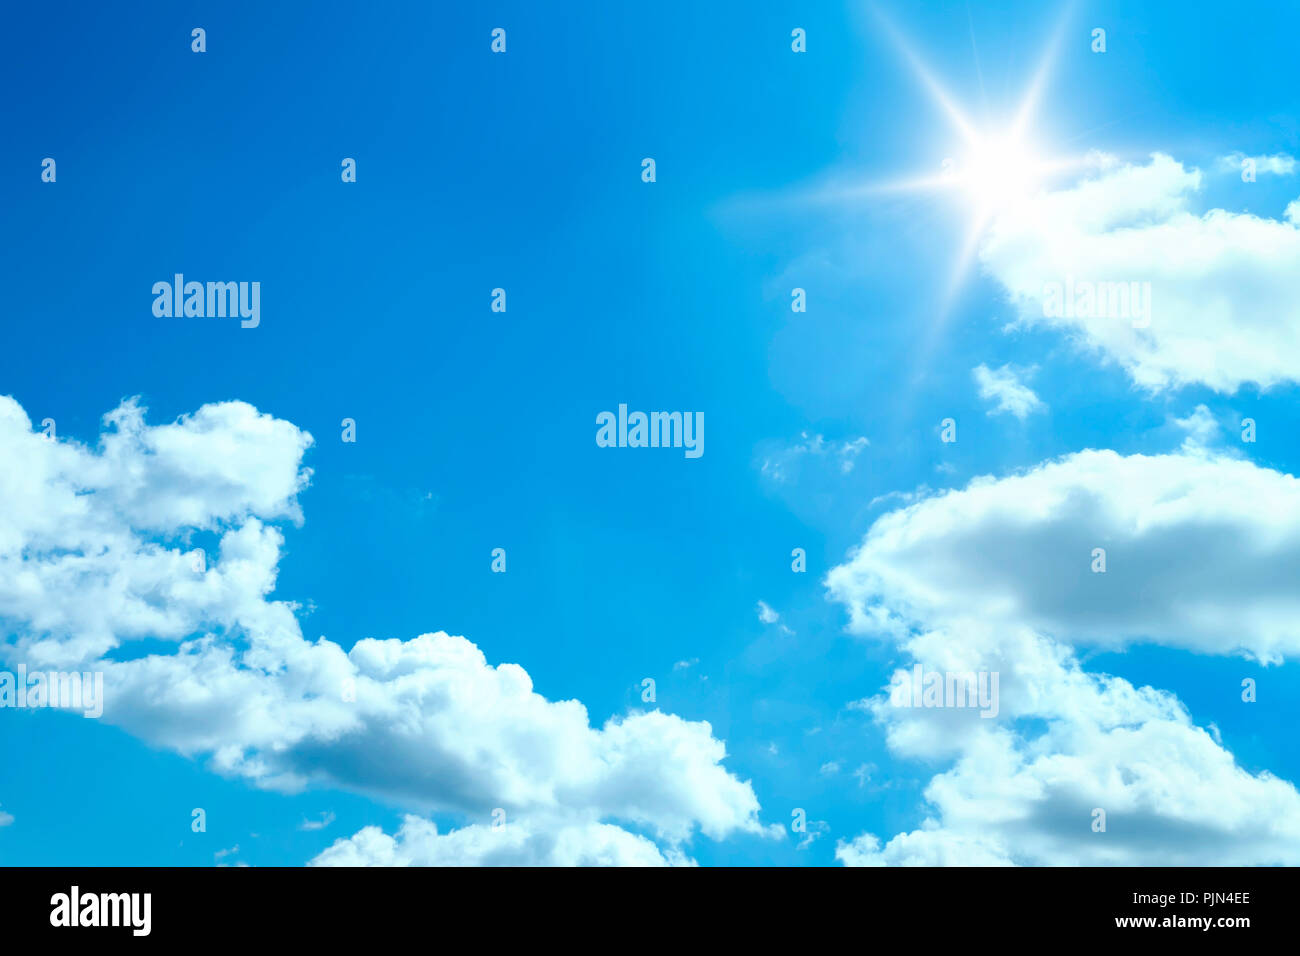 A nice blue sky with white clouds, Ein schöner blauer Himmel mit weissen Wolken Stock Photo